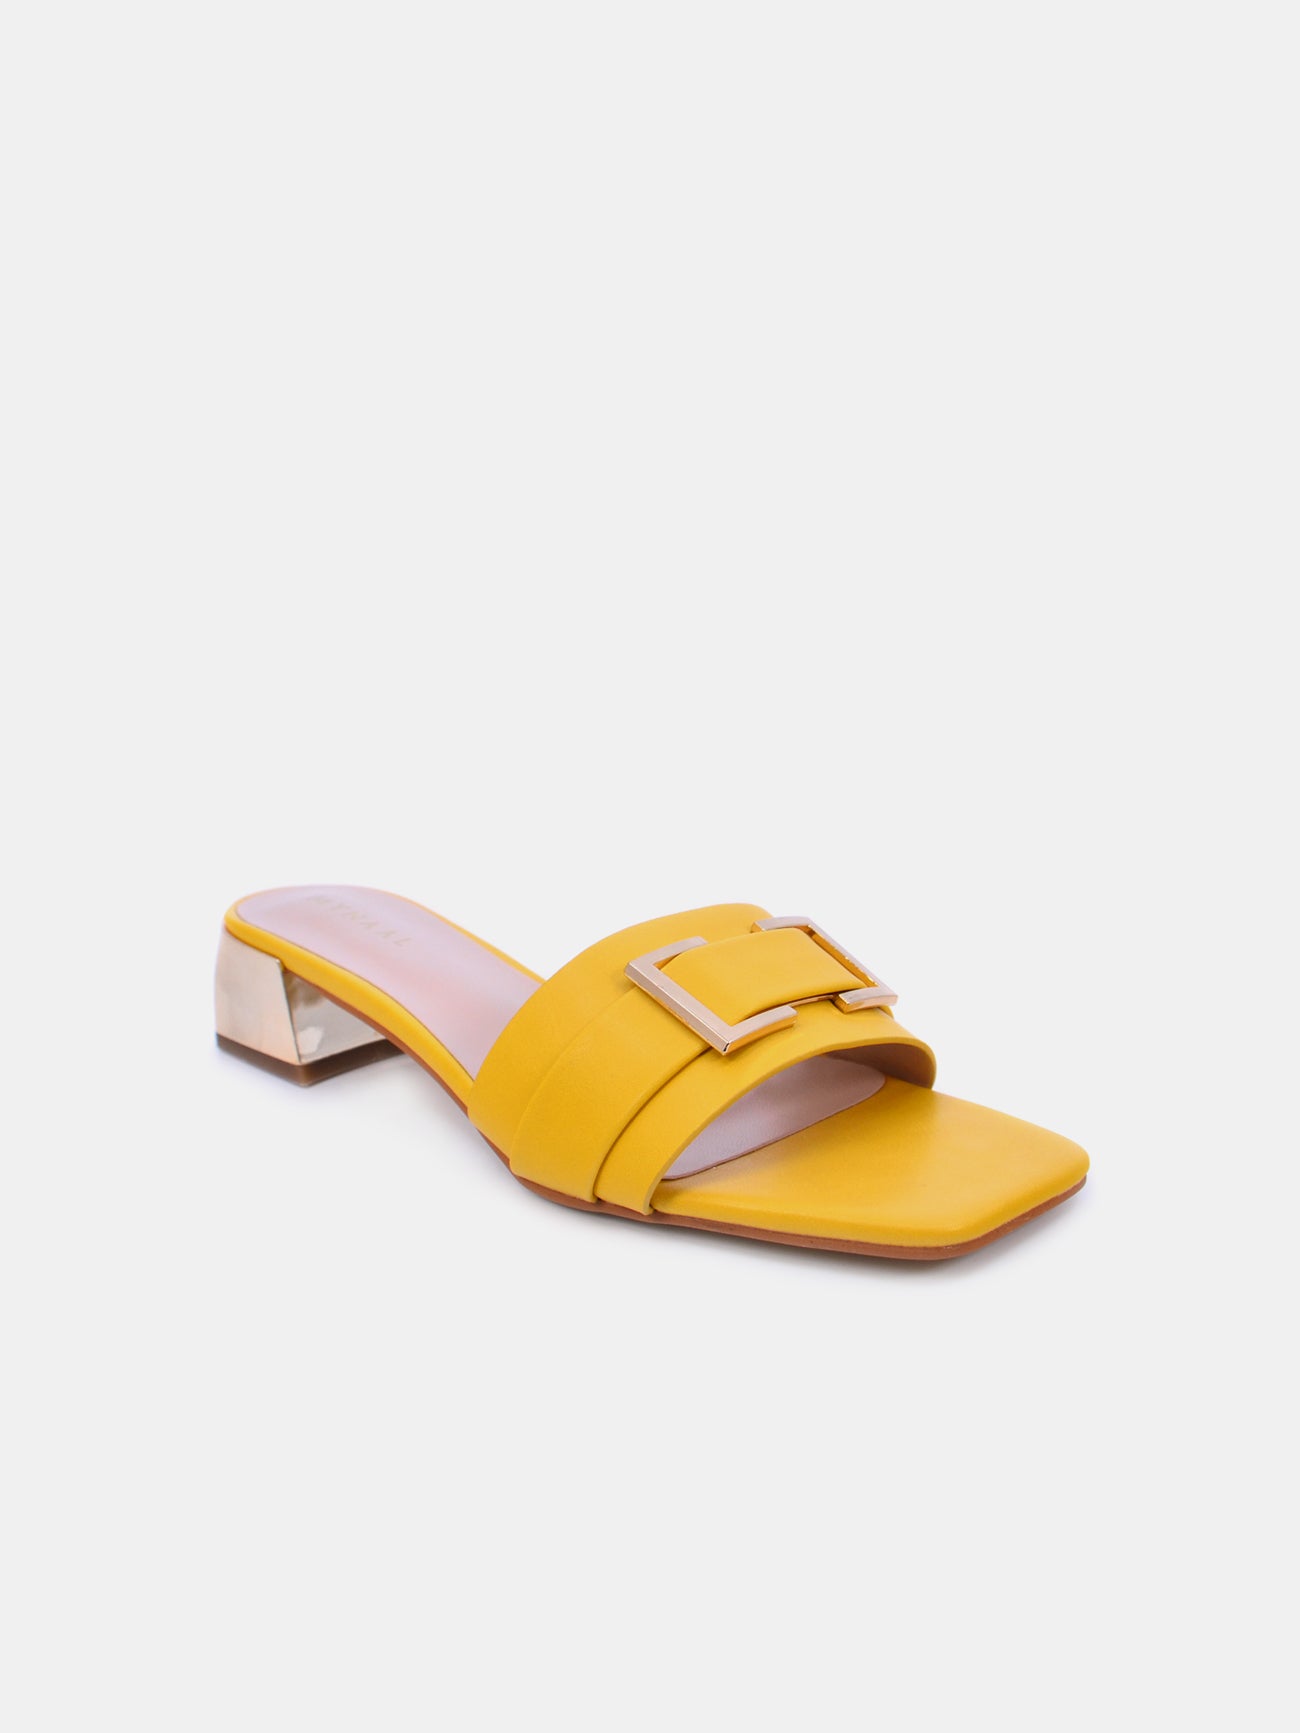 Mynaal Serix Women's Block Heel Sandals #color_Yellow